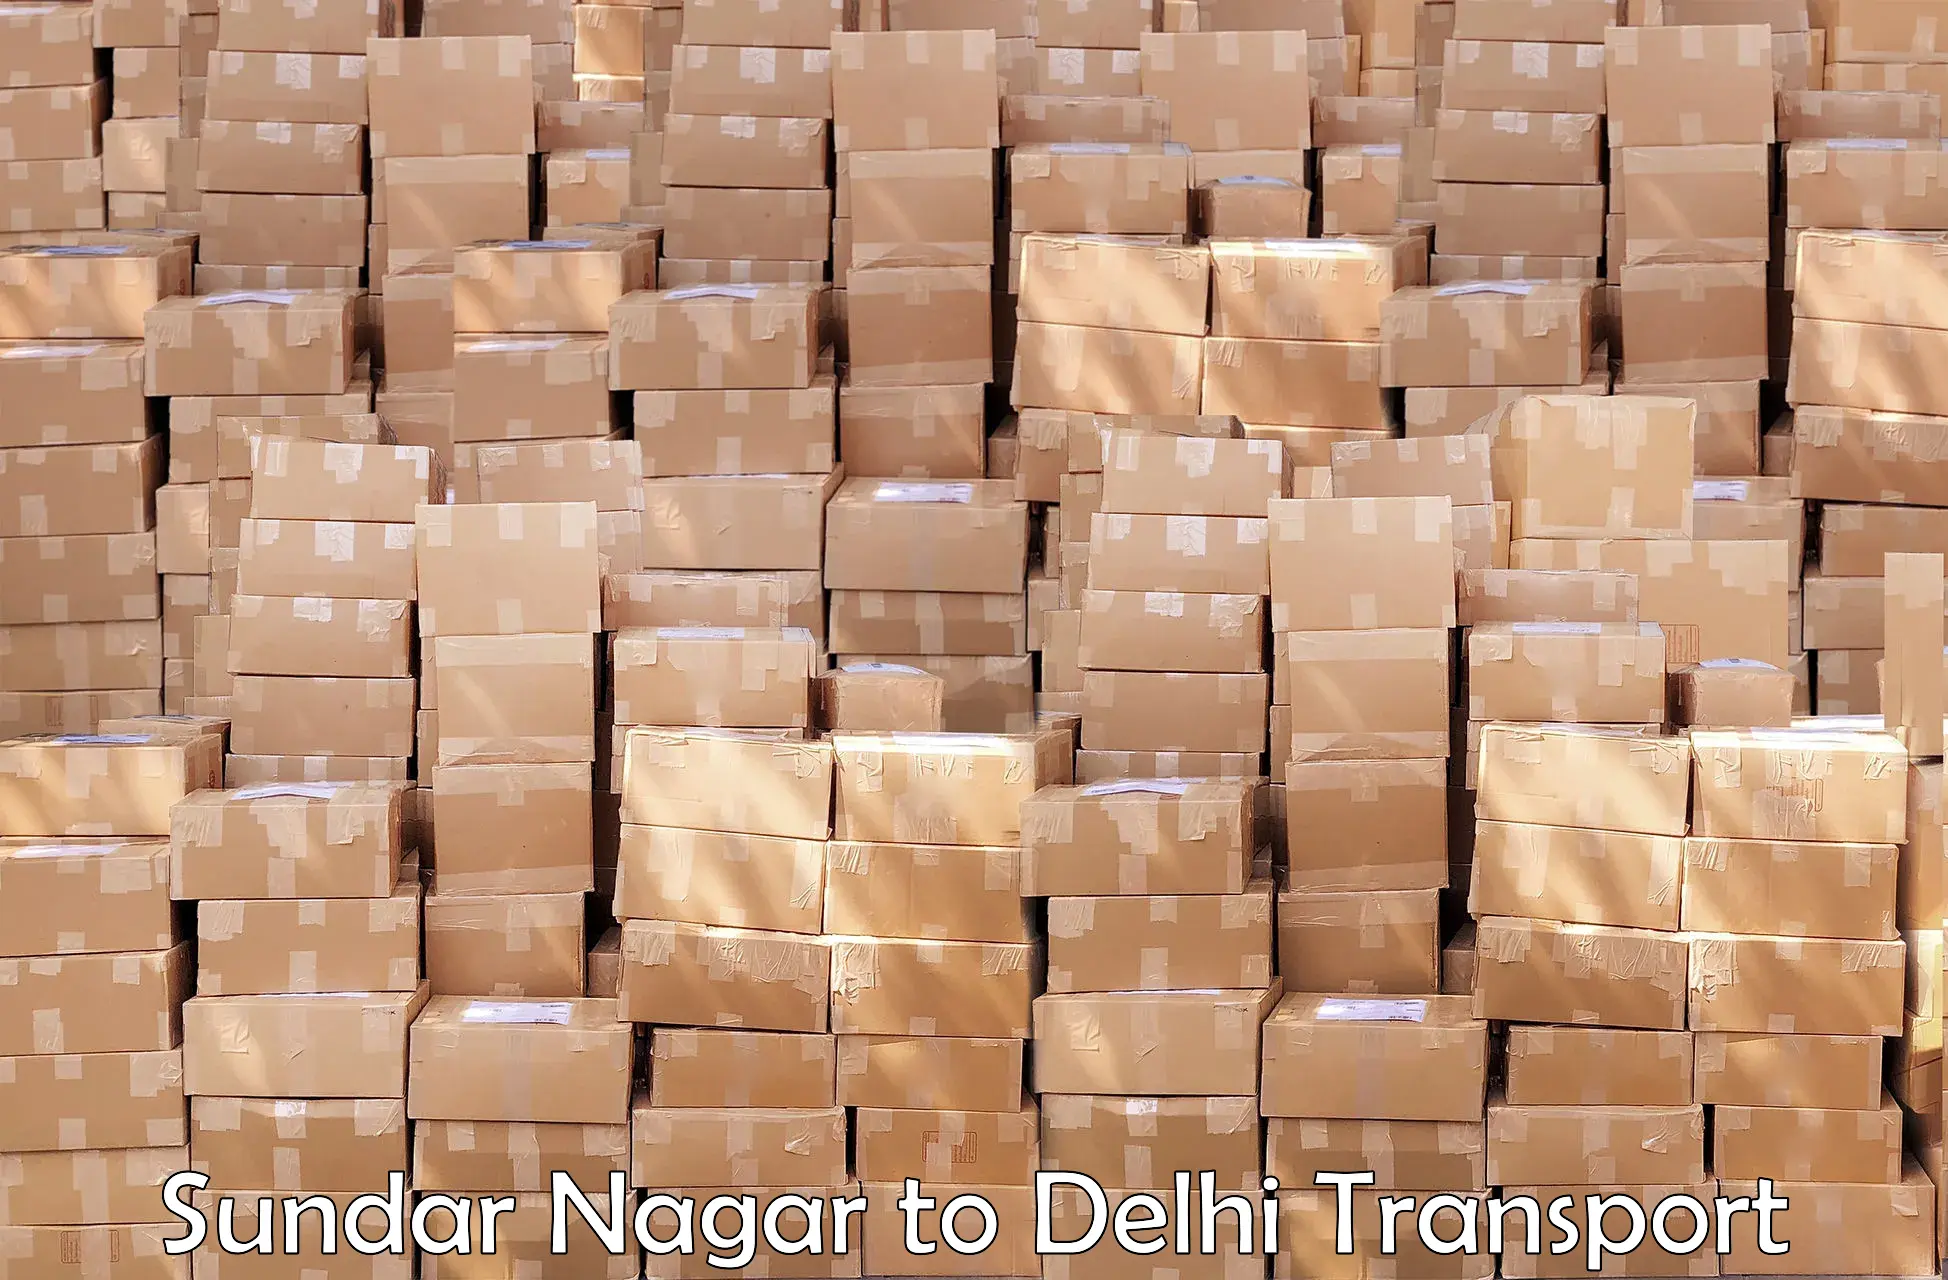 Daily parcel service transport Sundar Nagar to University of Delhi